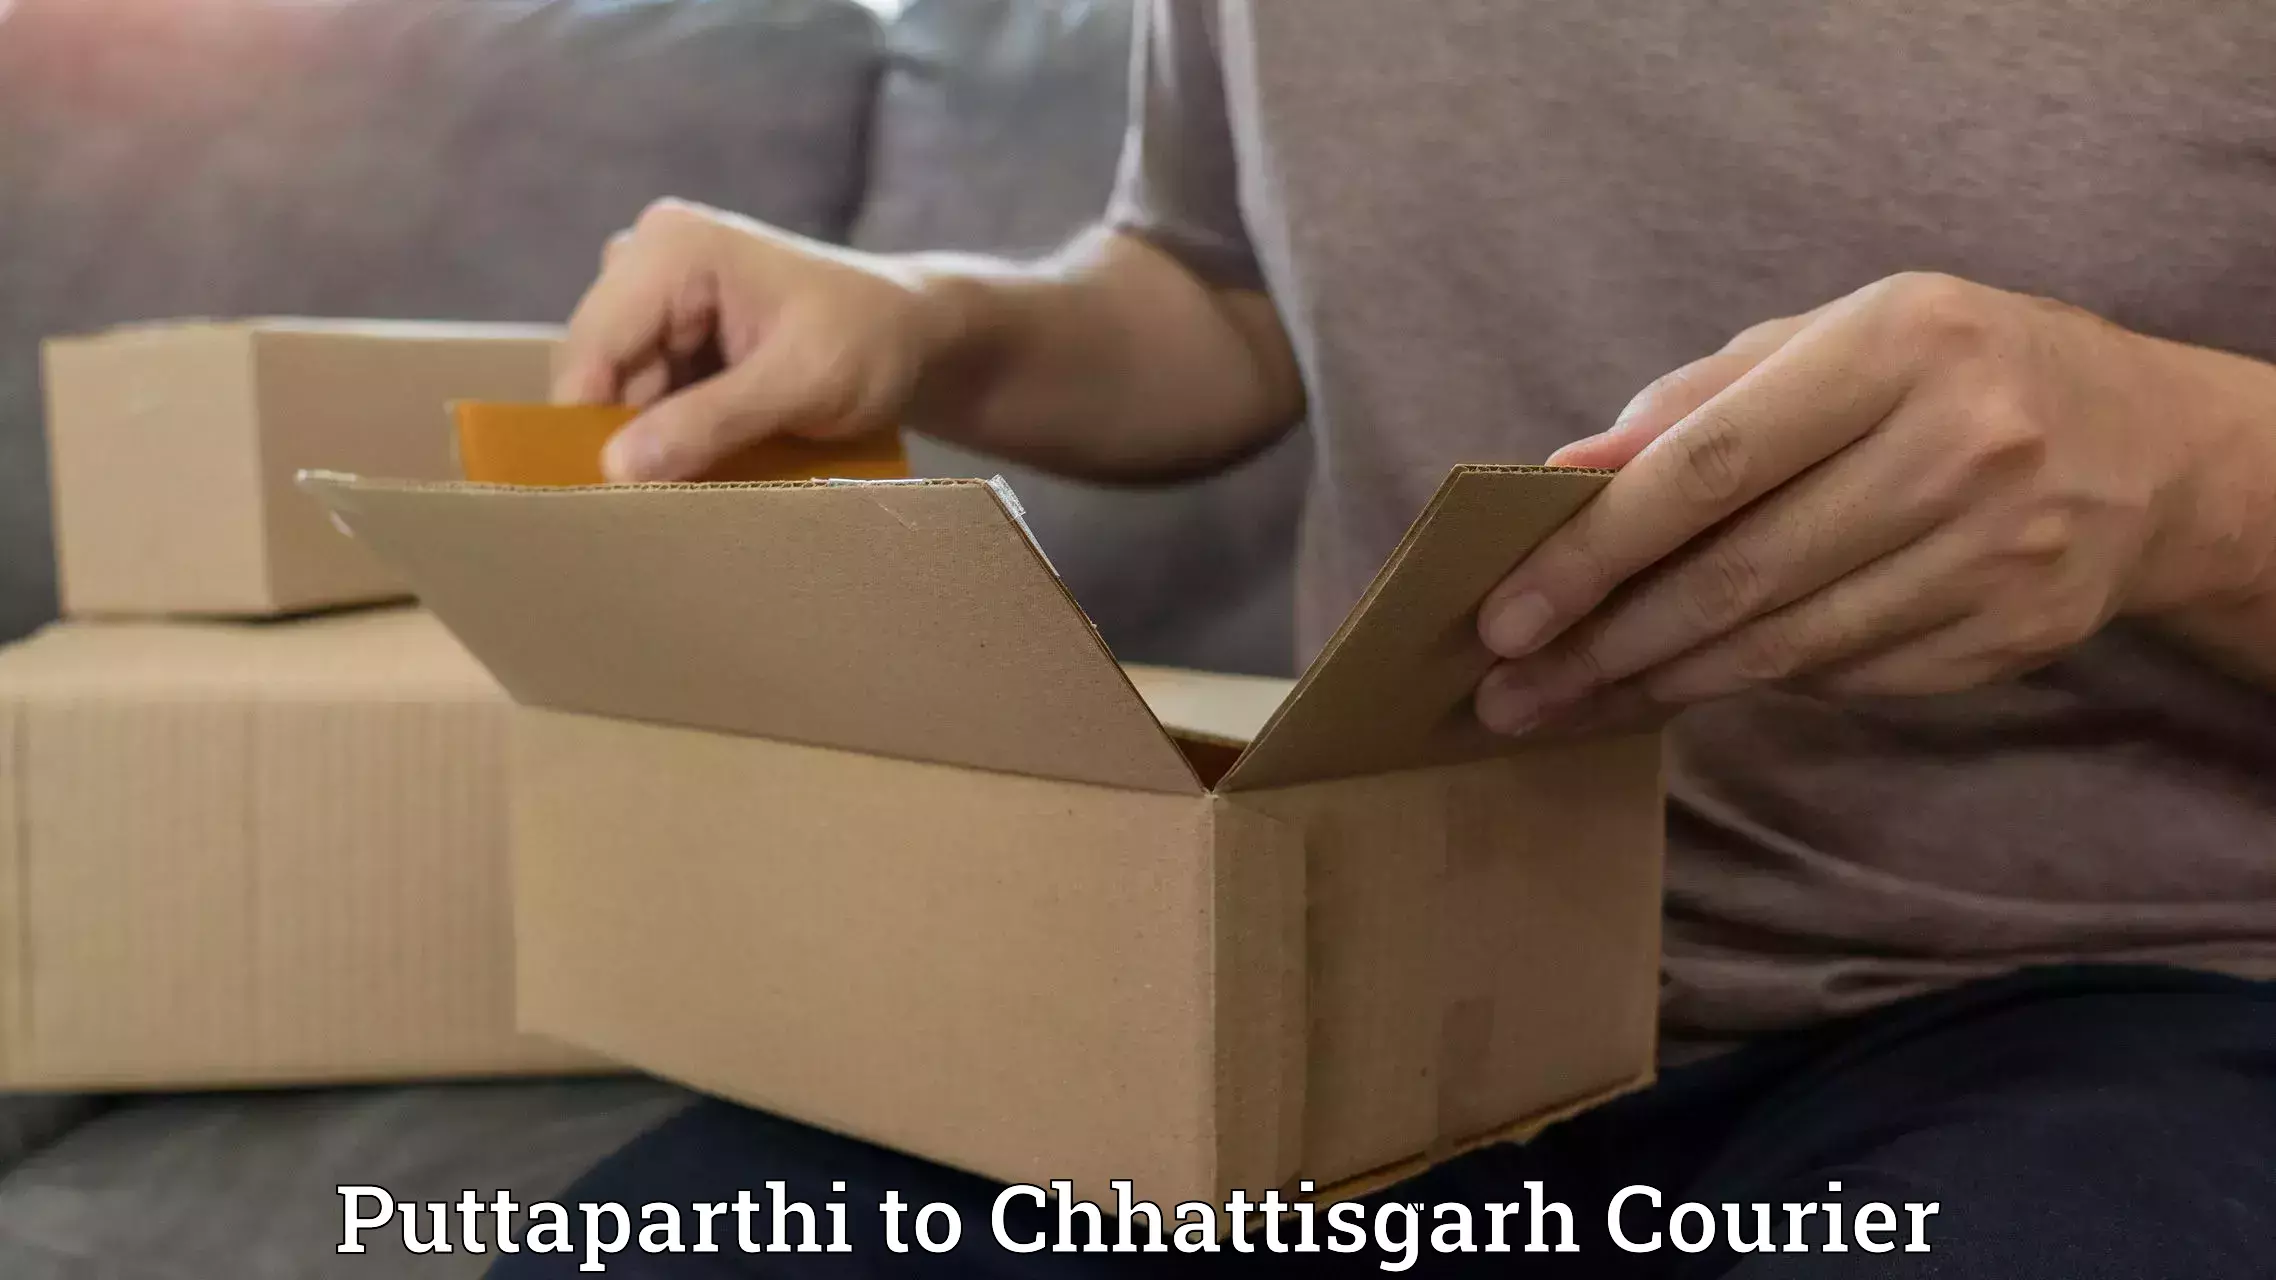 Courier dispatch services Puttaparthi to Chhattisgarh